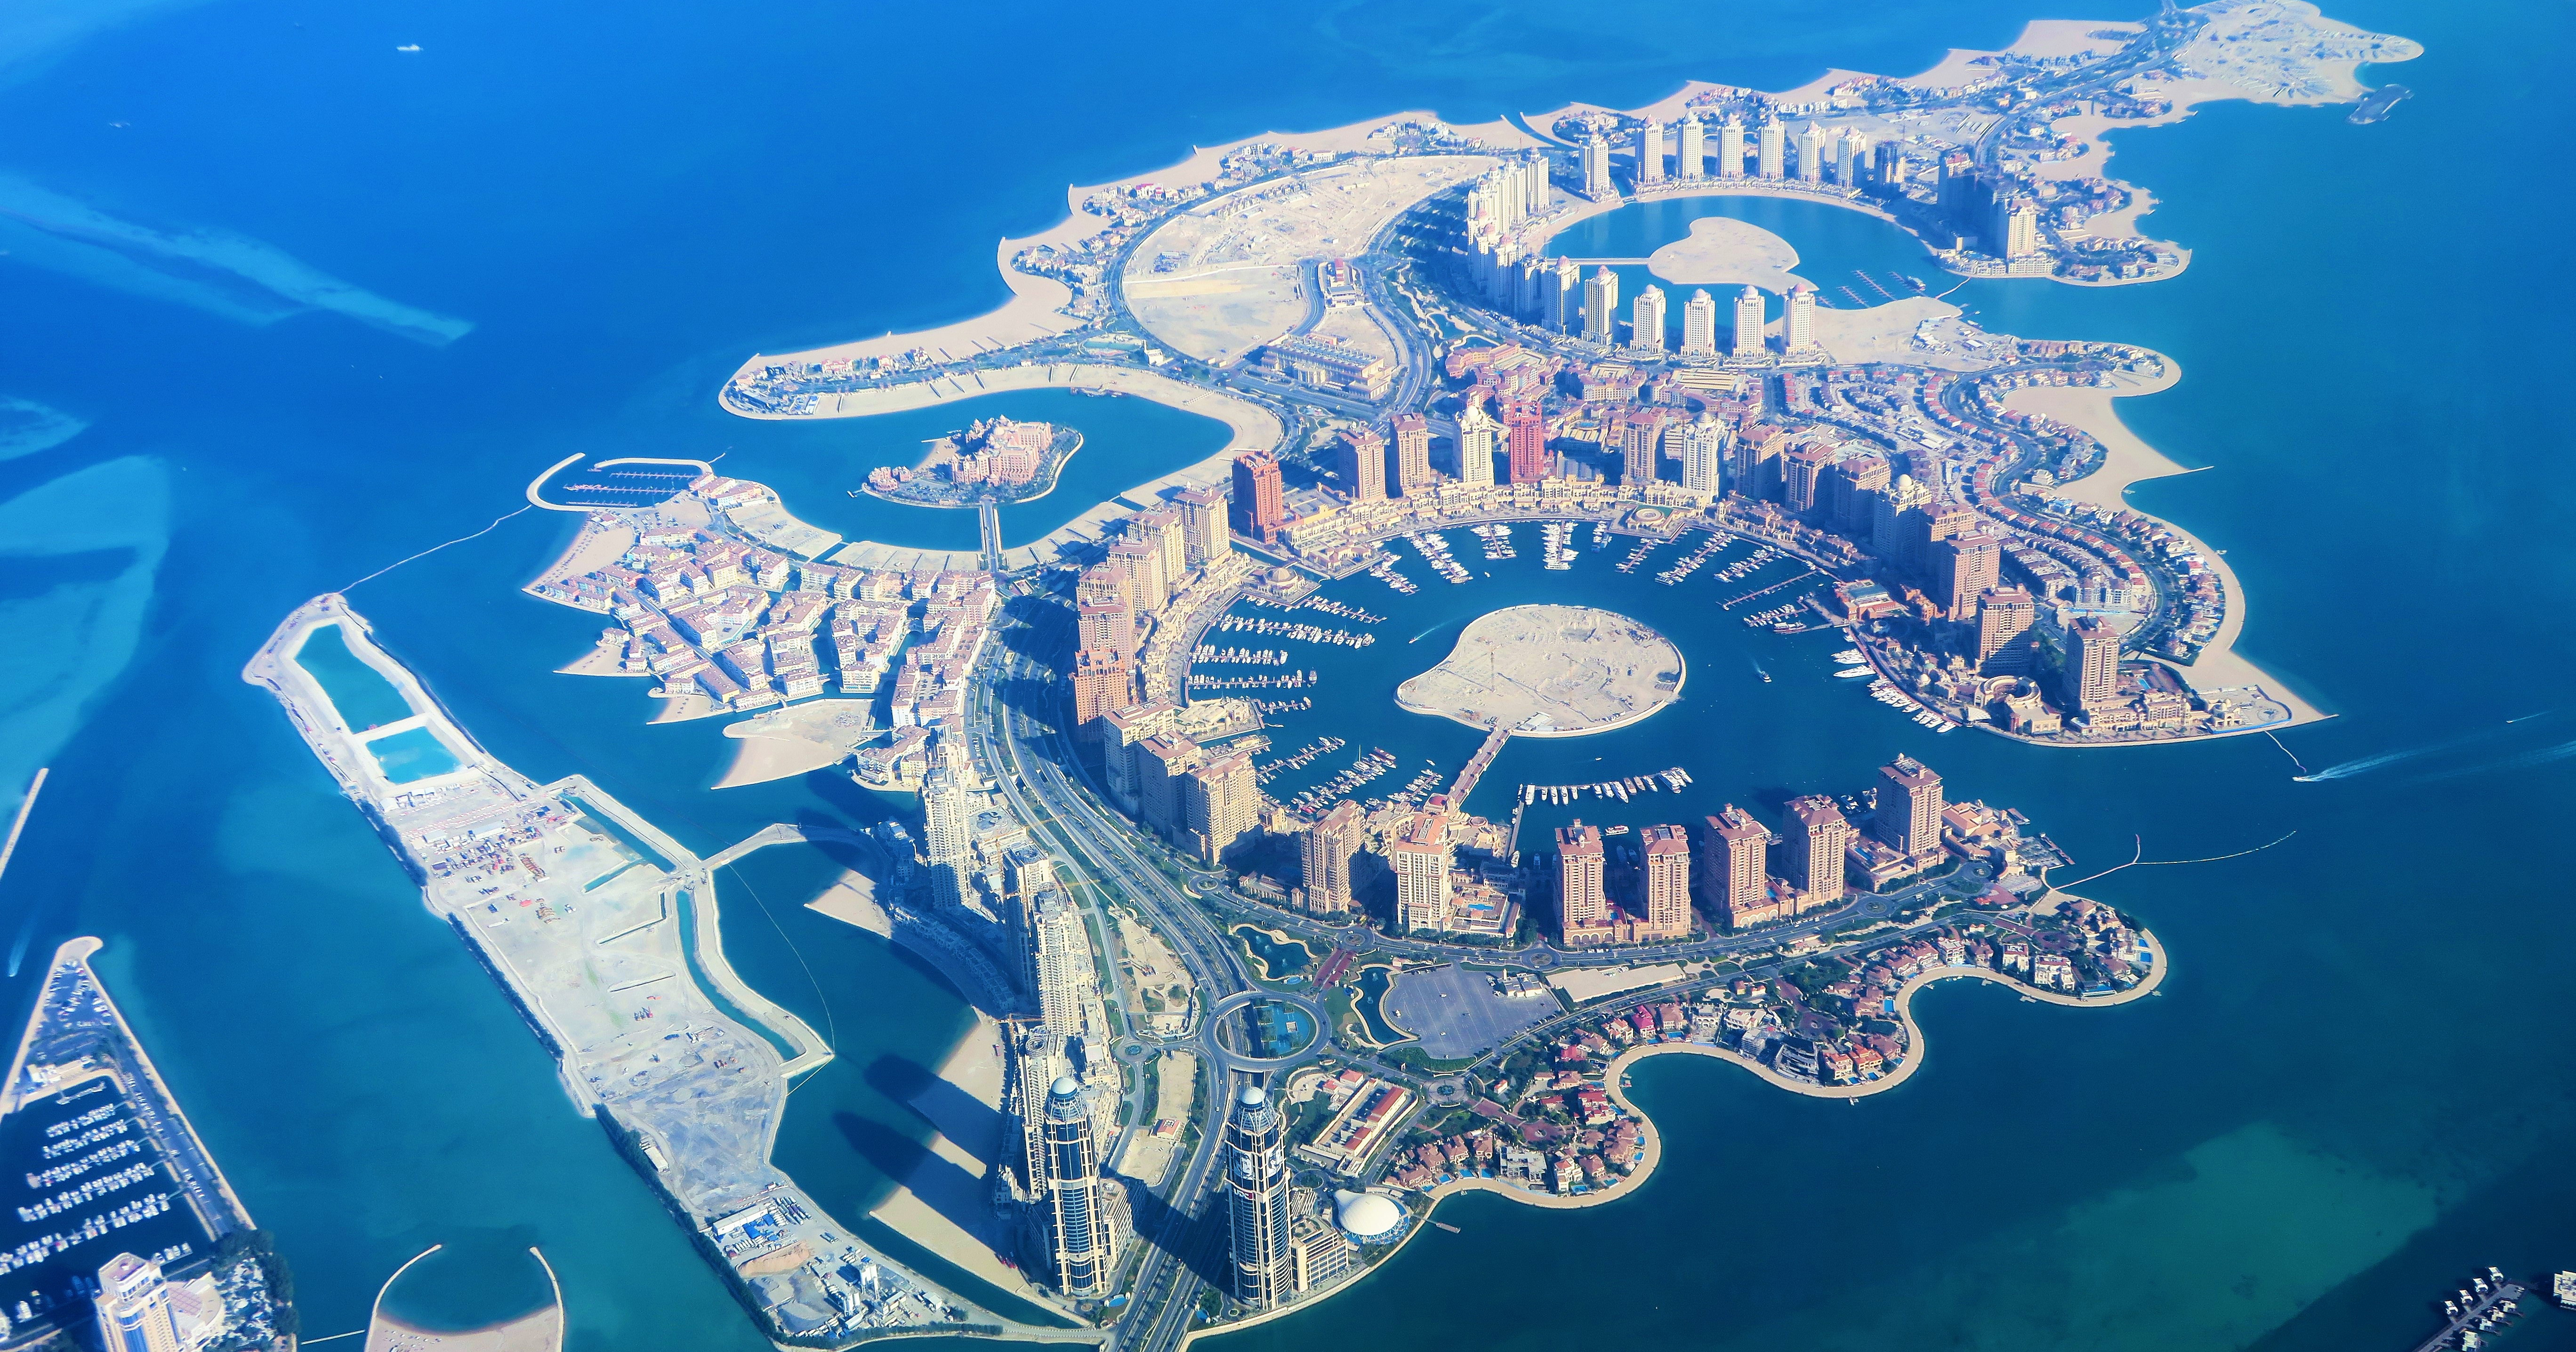 Artificial island in Qatar